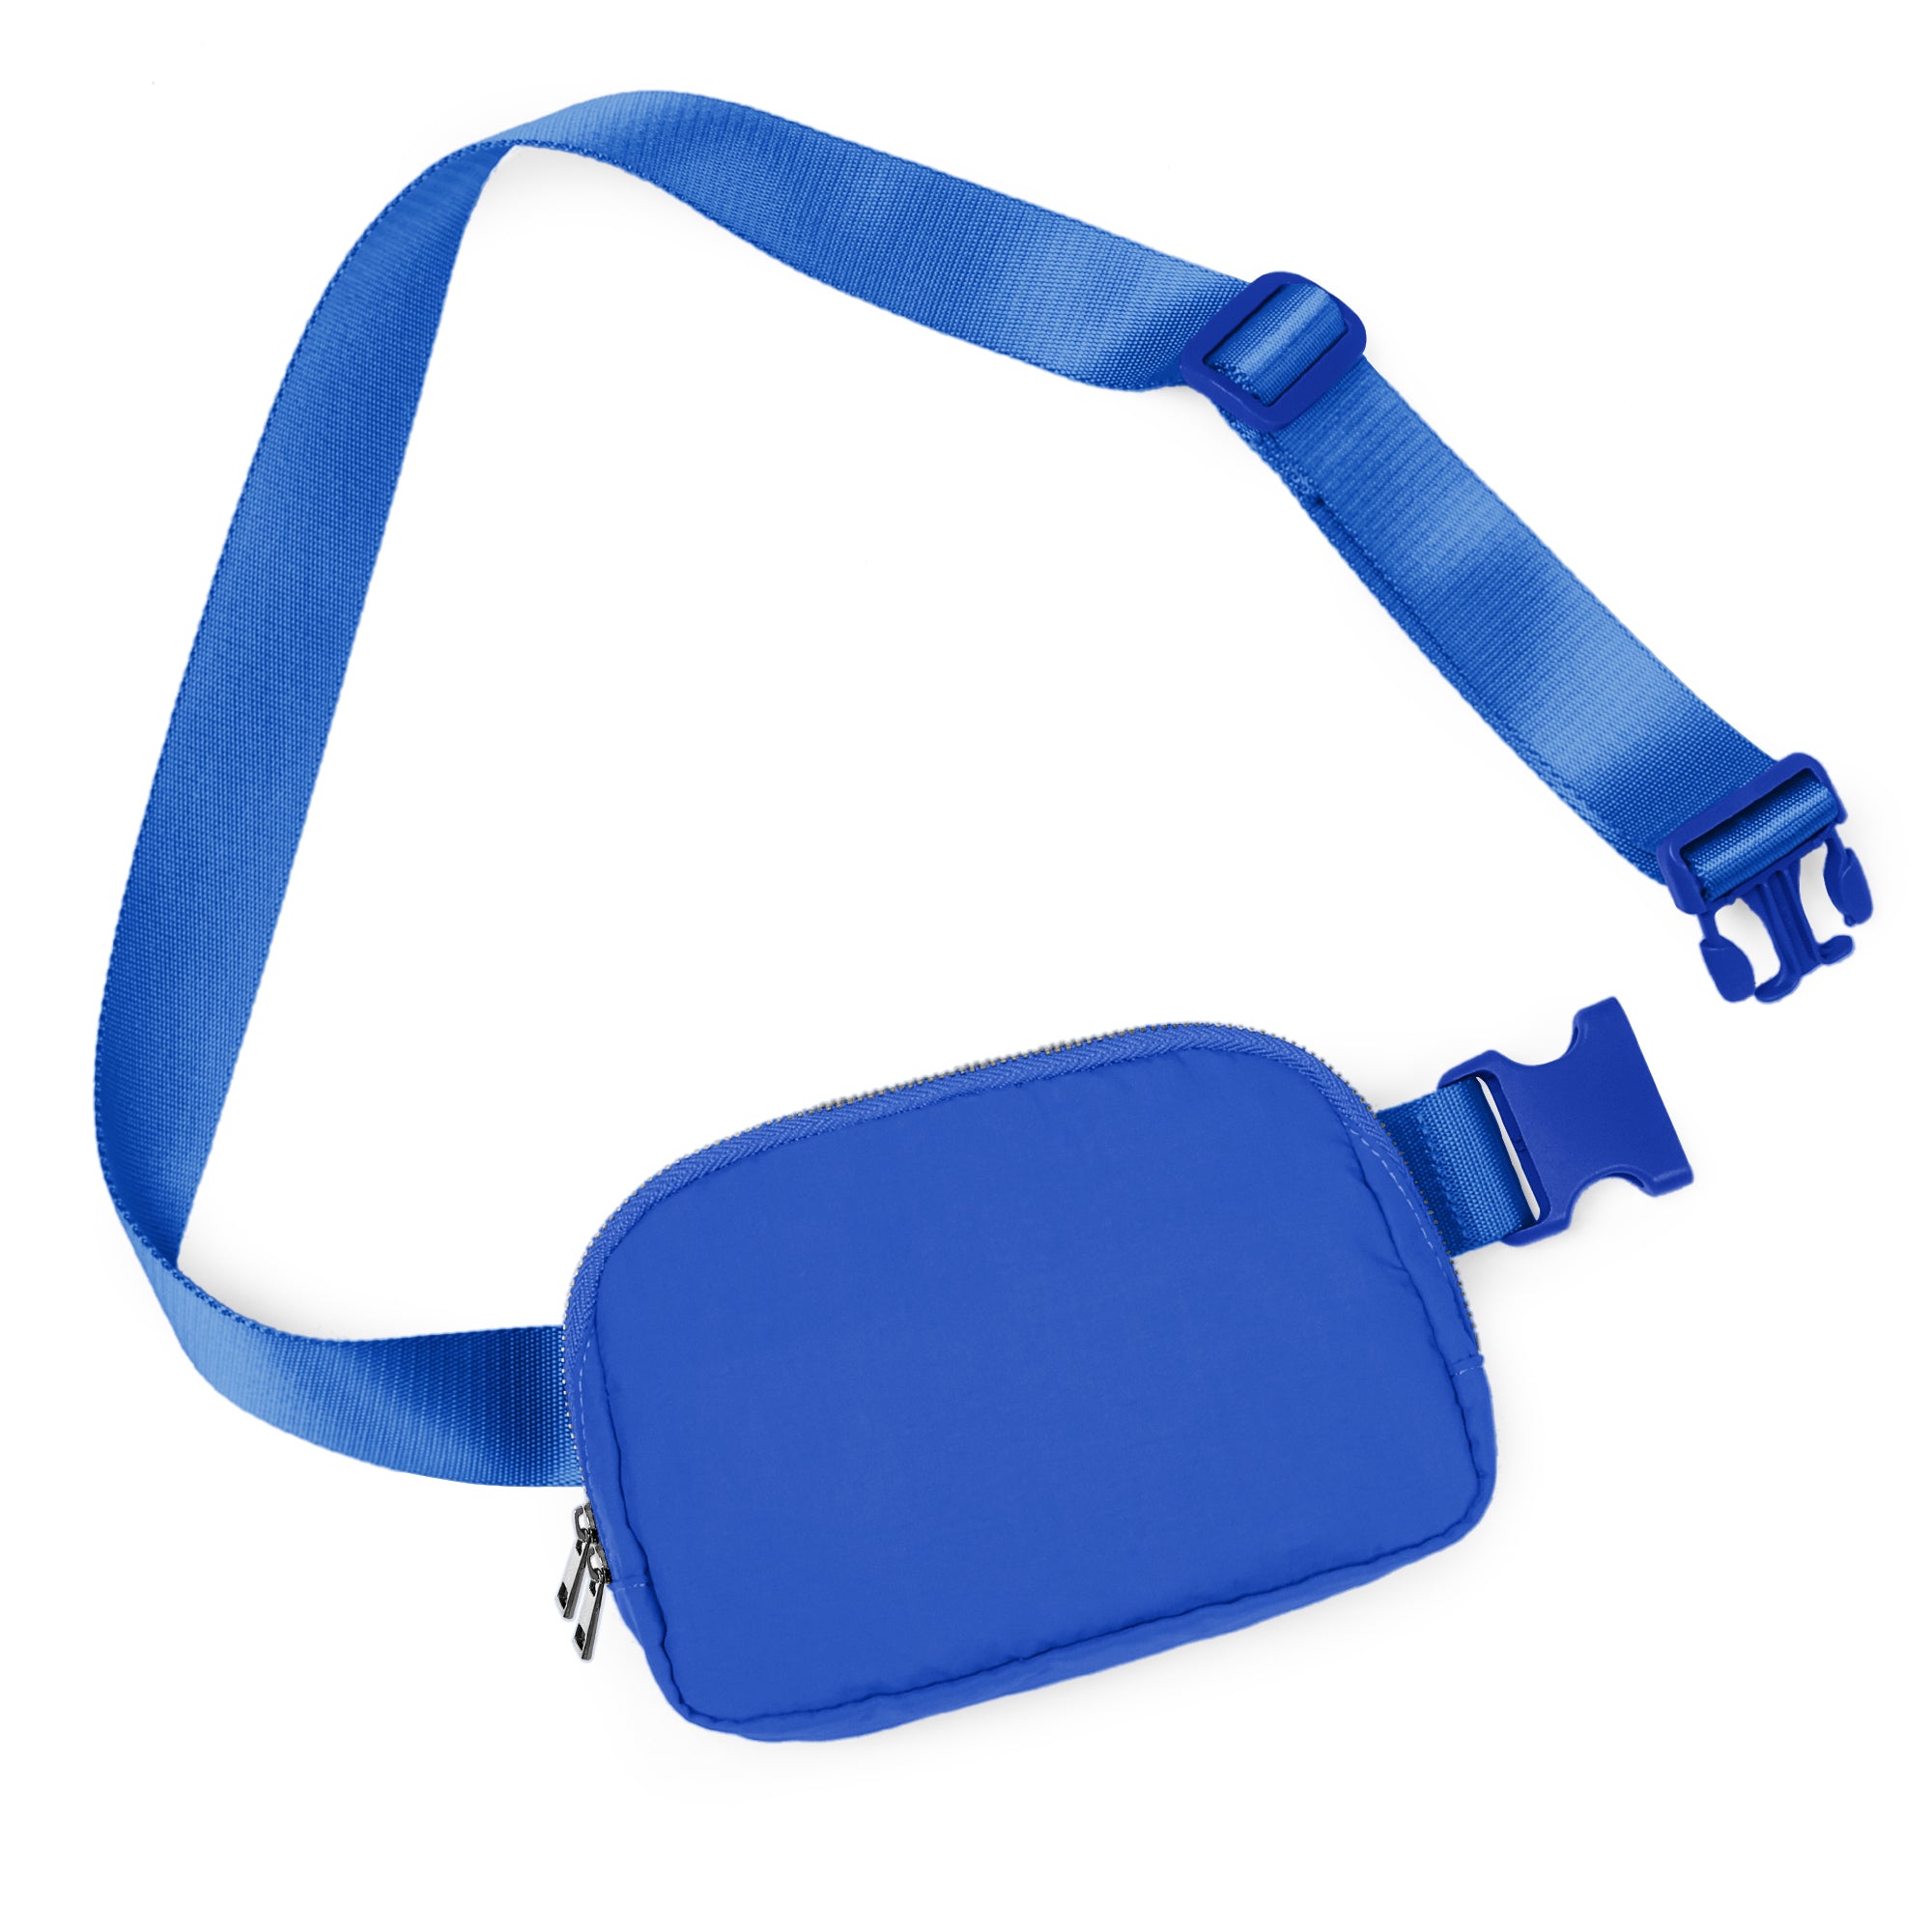 Unisex Two-Way Zip Mini Belt Bag Wild Blue 8" x 2" x 5.5" - ododos